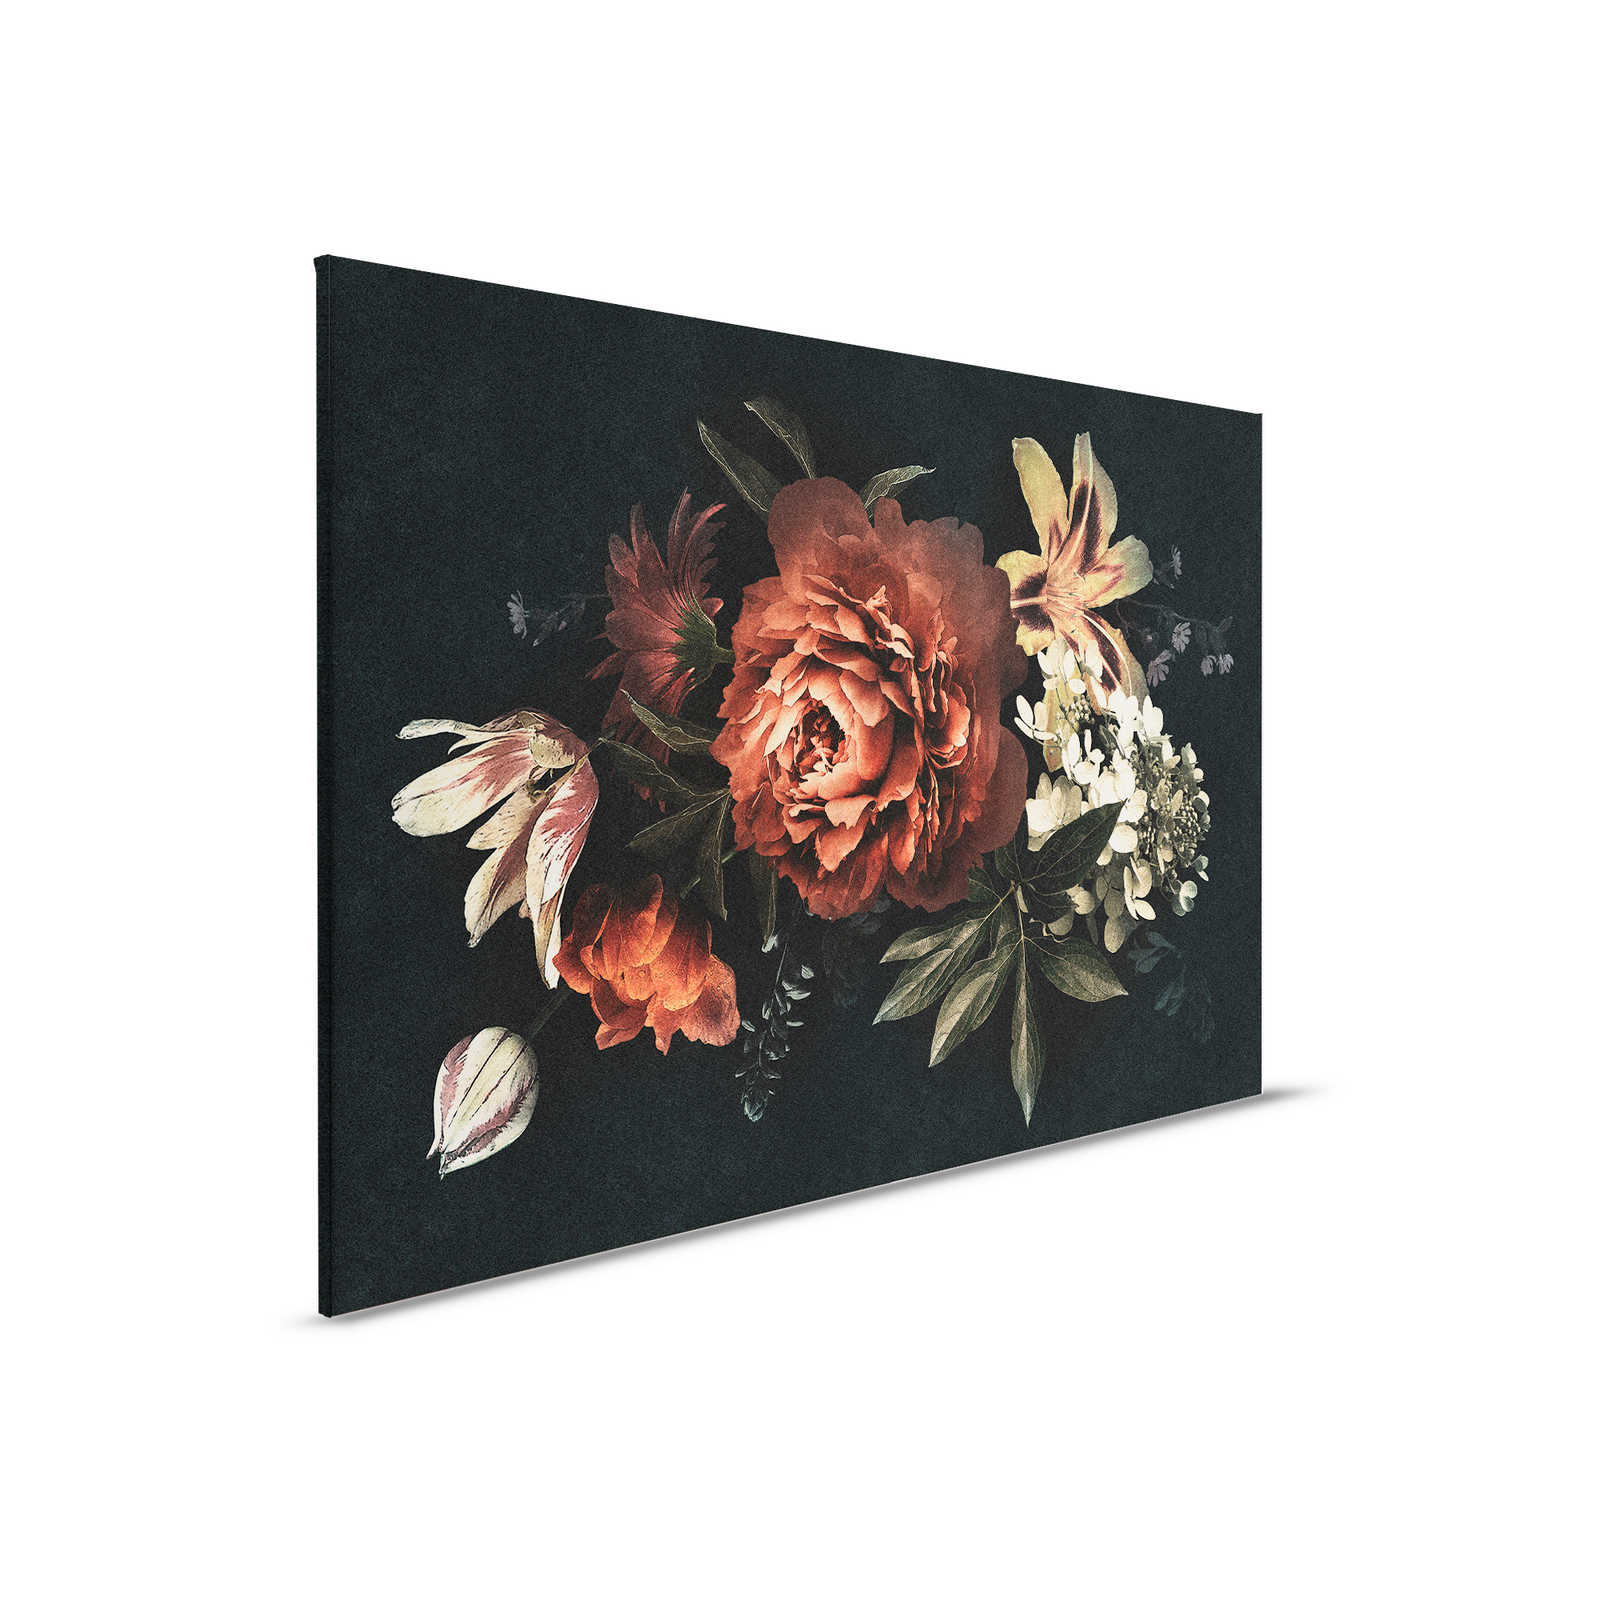 Drama queen 1 - Cuadro lienzo Bouquet con fondo oscuro en estructura de cartón - 0,90 m x 0,60 m
